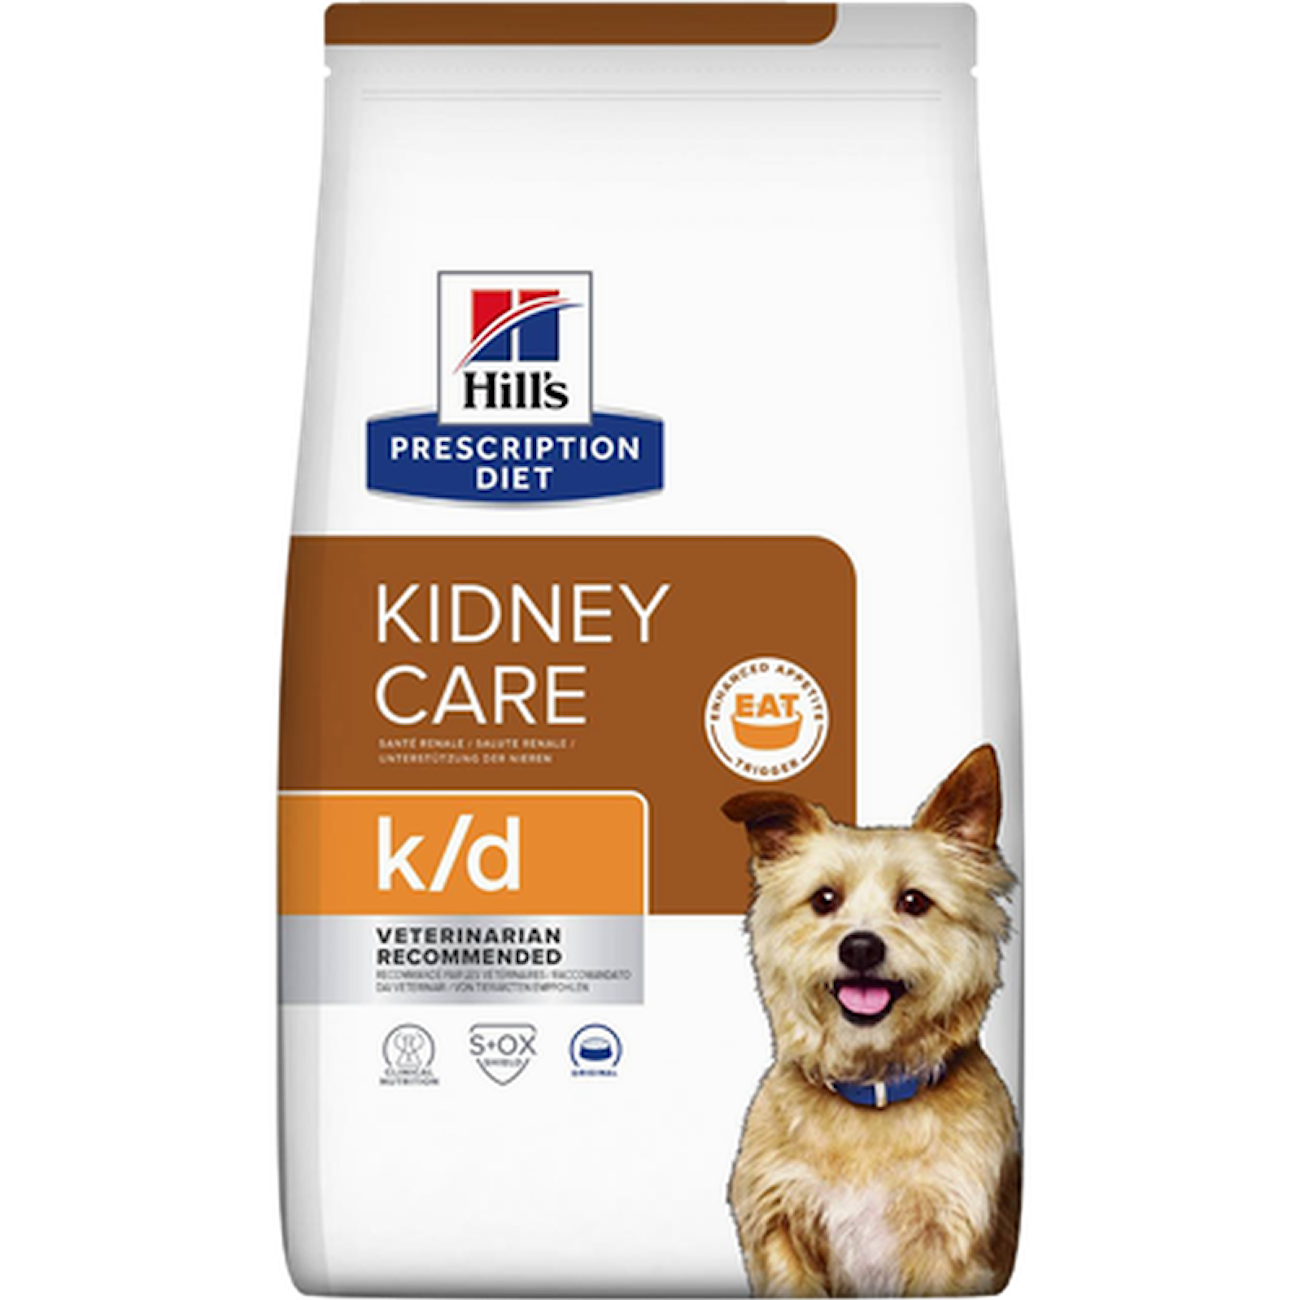 k/d Kidney Care Original - Dry Dog Food